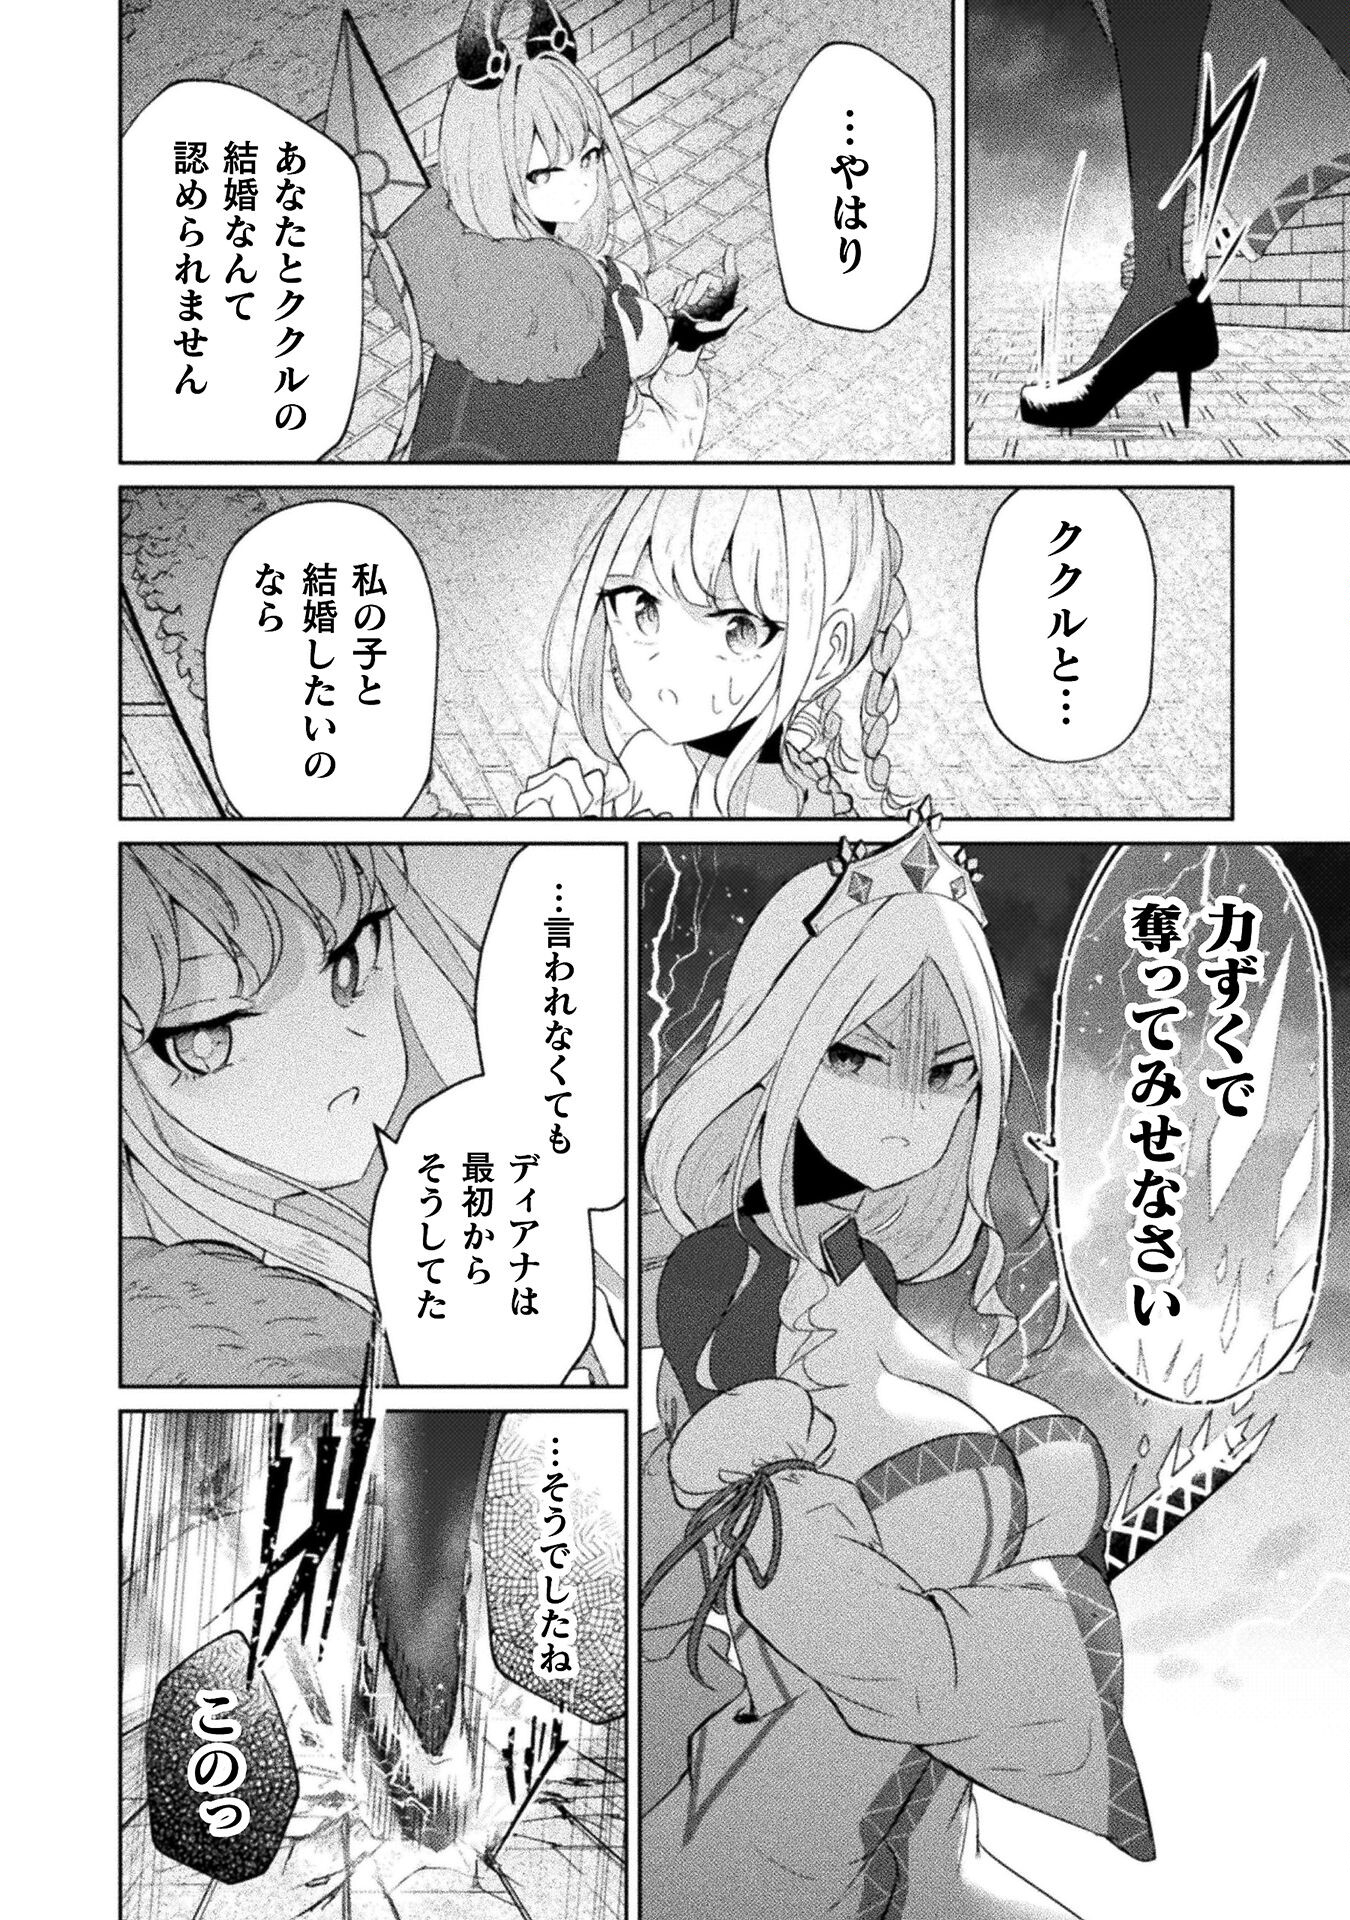 Maou Jou Date Daisakusen! - Chapter 17 - Page 2